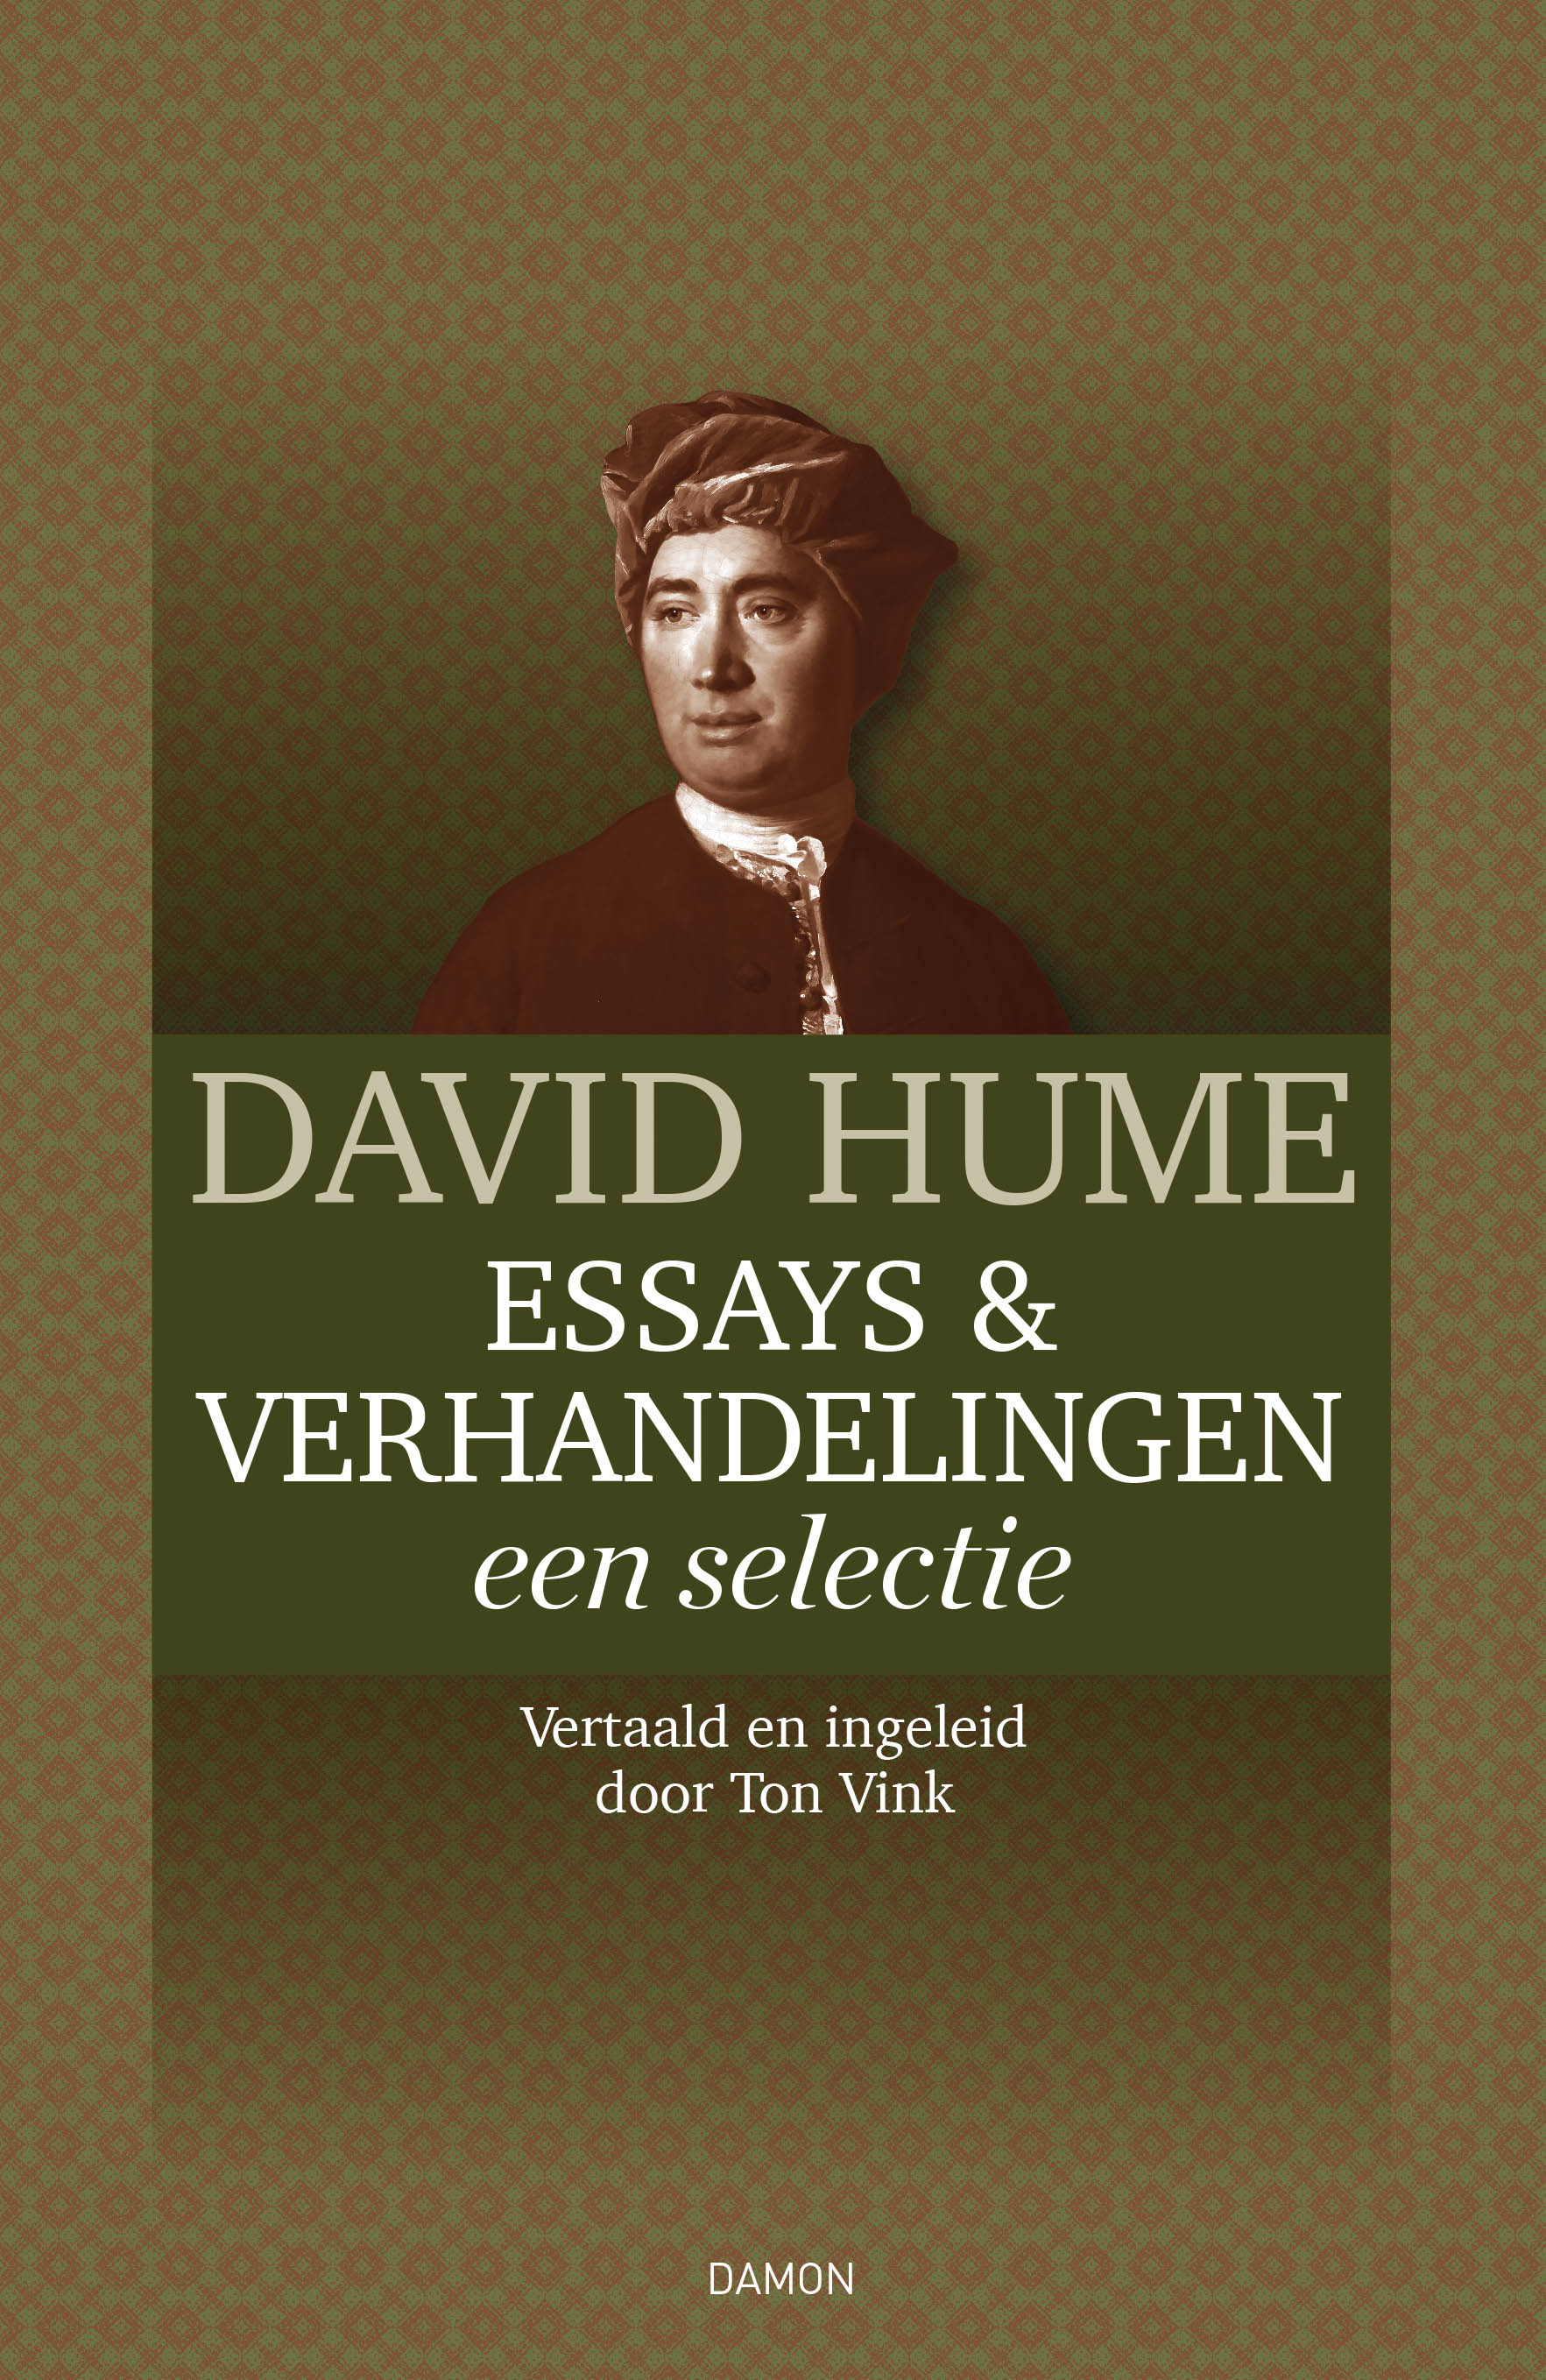 Boekpresentatie David Hume, Essays & Verhandelingen